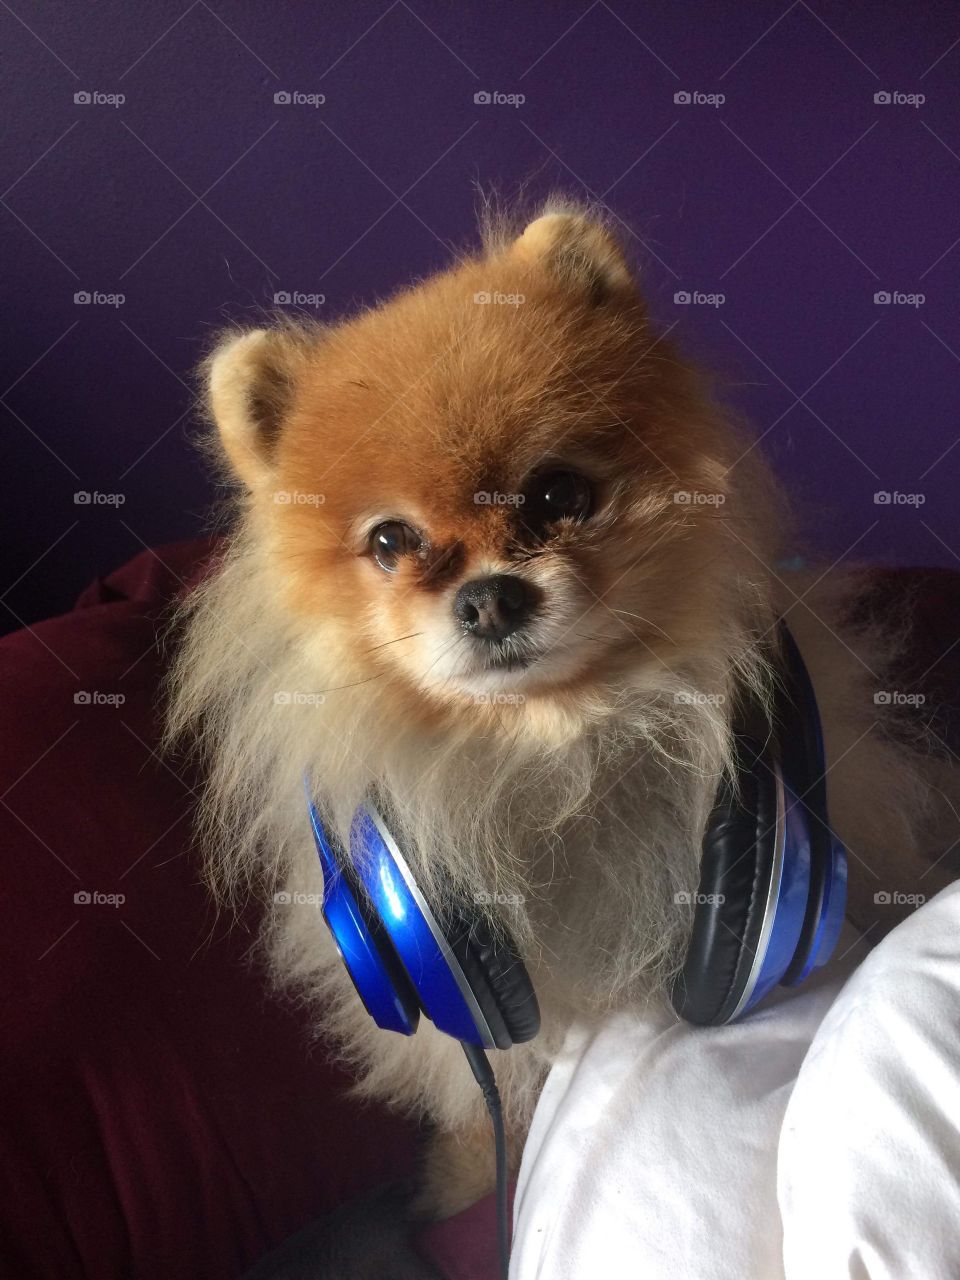 Dog with headphones 